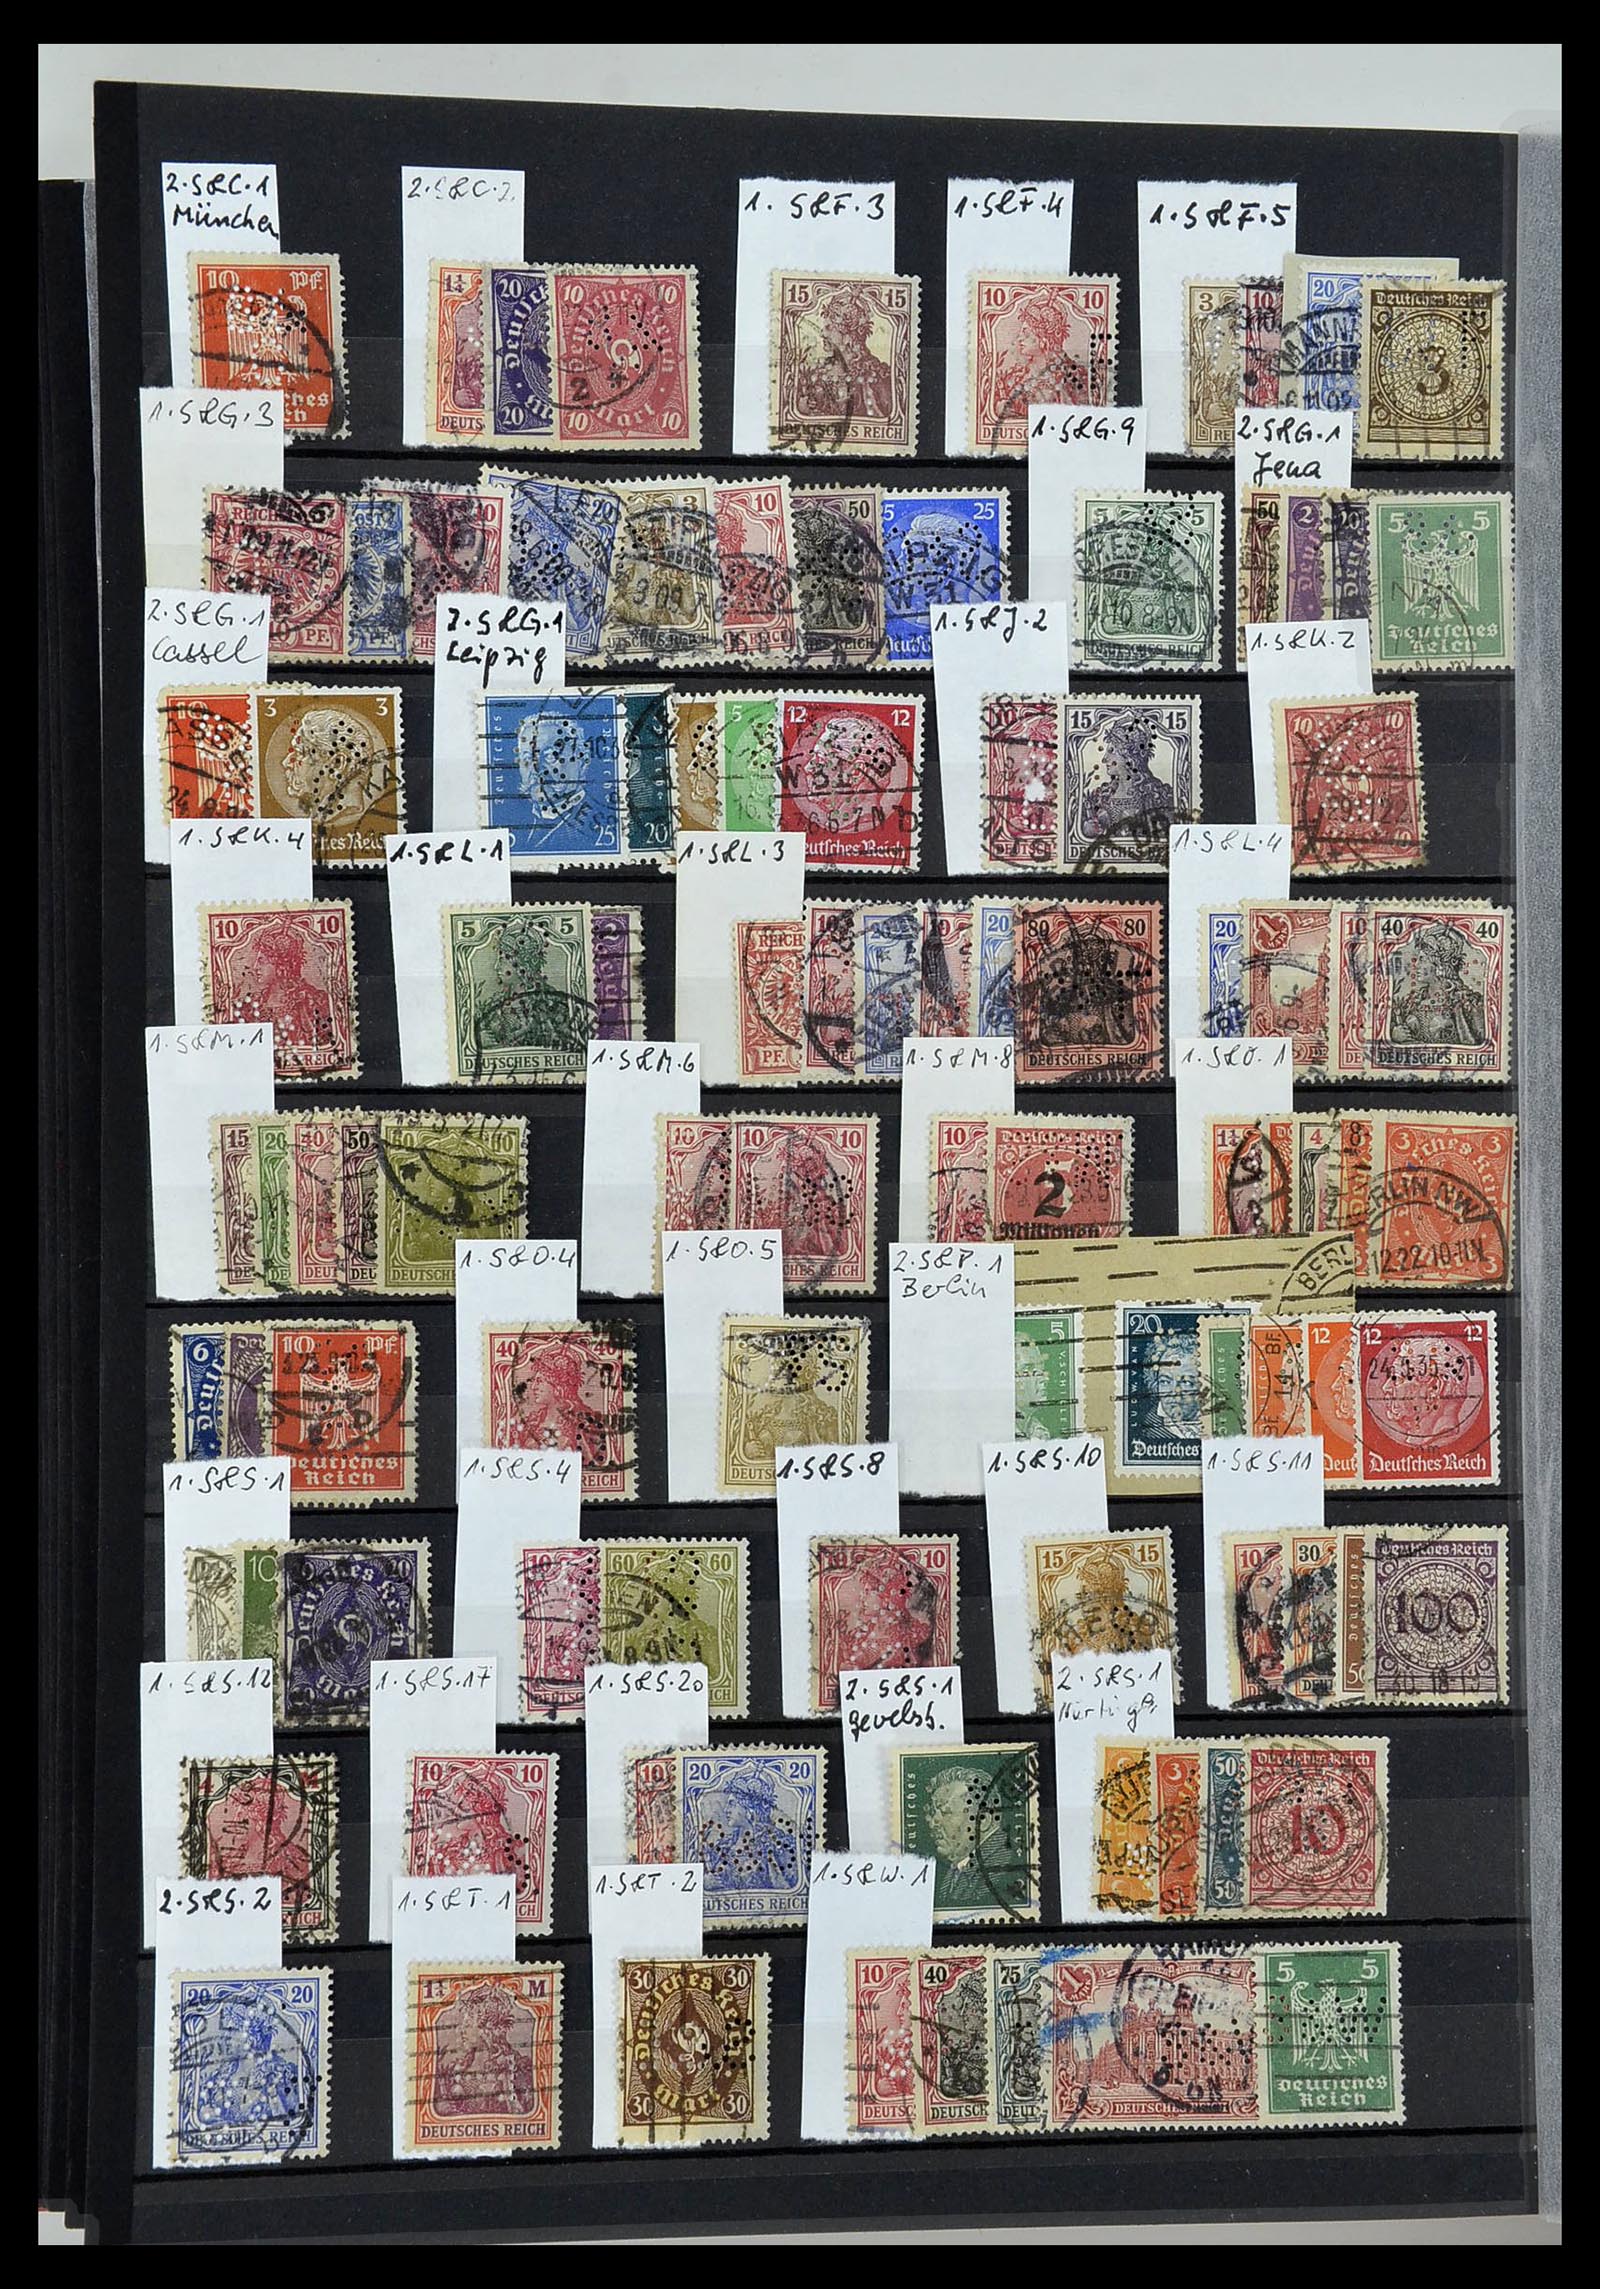 34432 032 - Stamp Collection 34432 German Reich perfins 1900-1933.